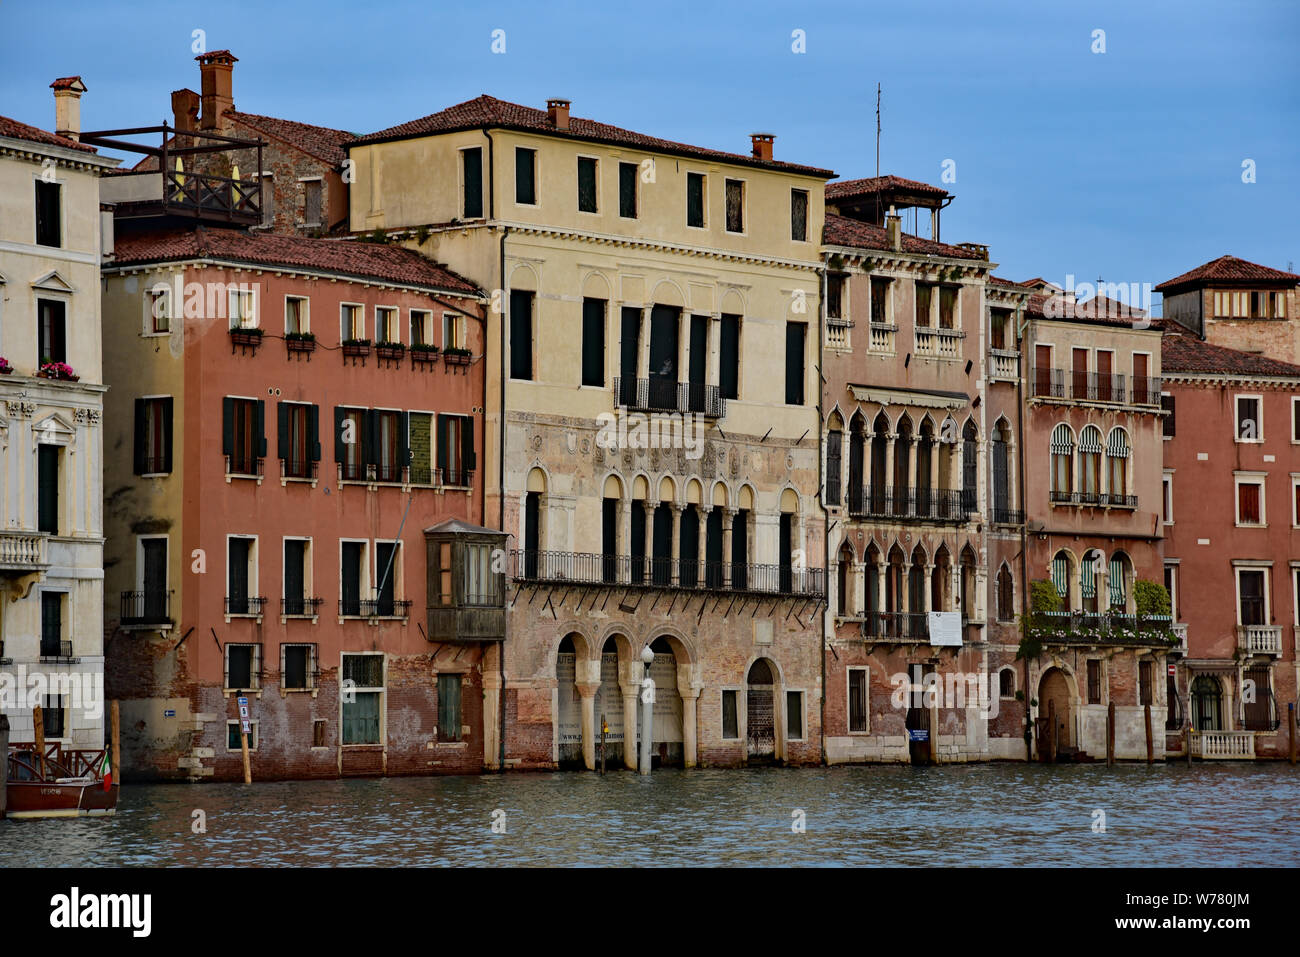 Ca' da Mosto, le plus ancien palais sur le Grand Canal, le 13e siècle l'architecture Byzantine, Cannaregio, Venise, Vénétie, Italie, Europe. Banque D'Images